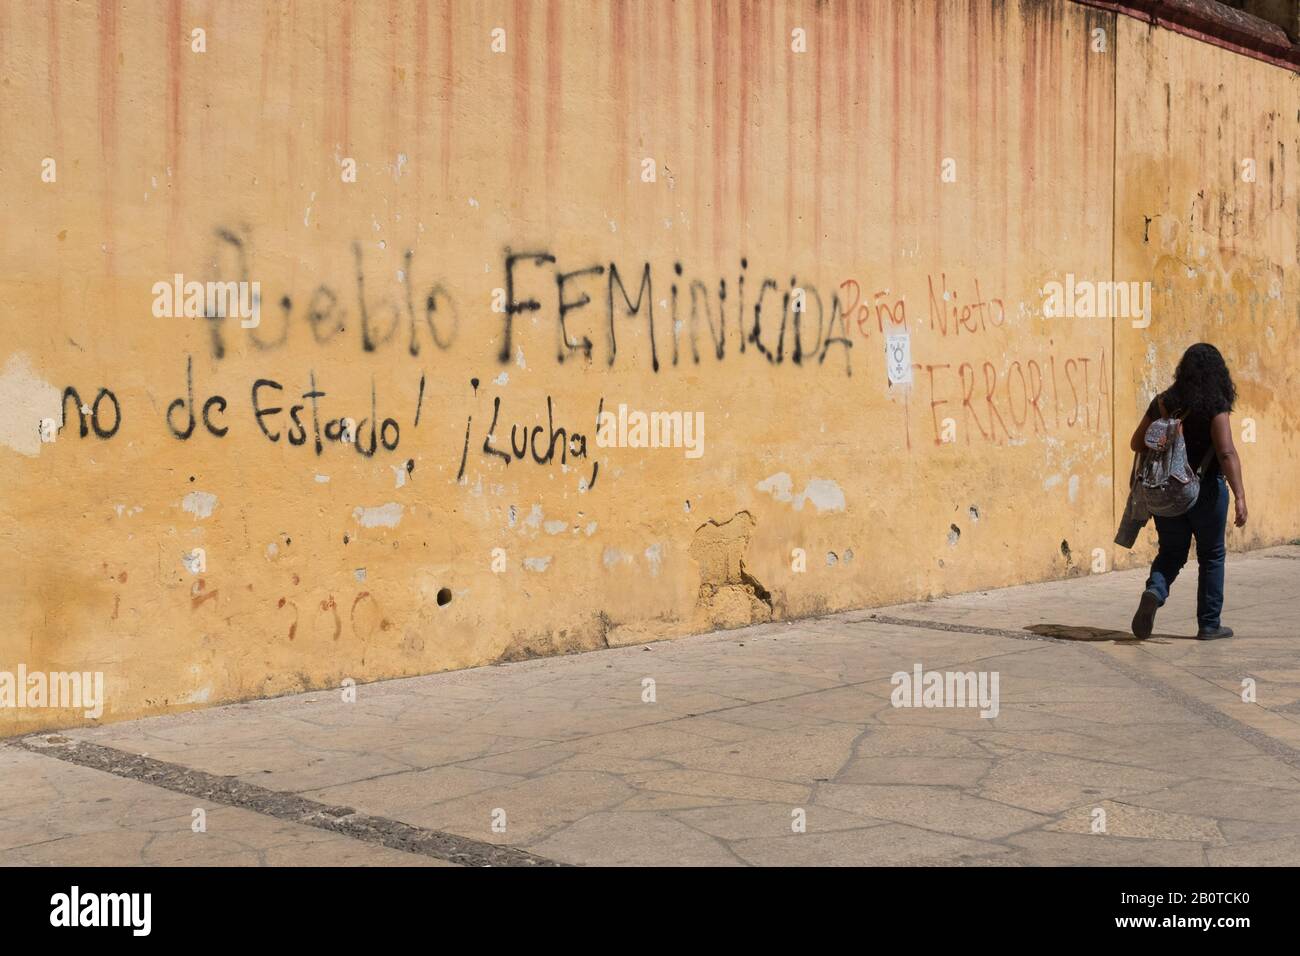 Graffiti sur le fémicide au Mexique, San Cristobal , Chiapas Banque D'Images